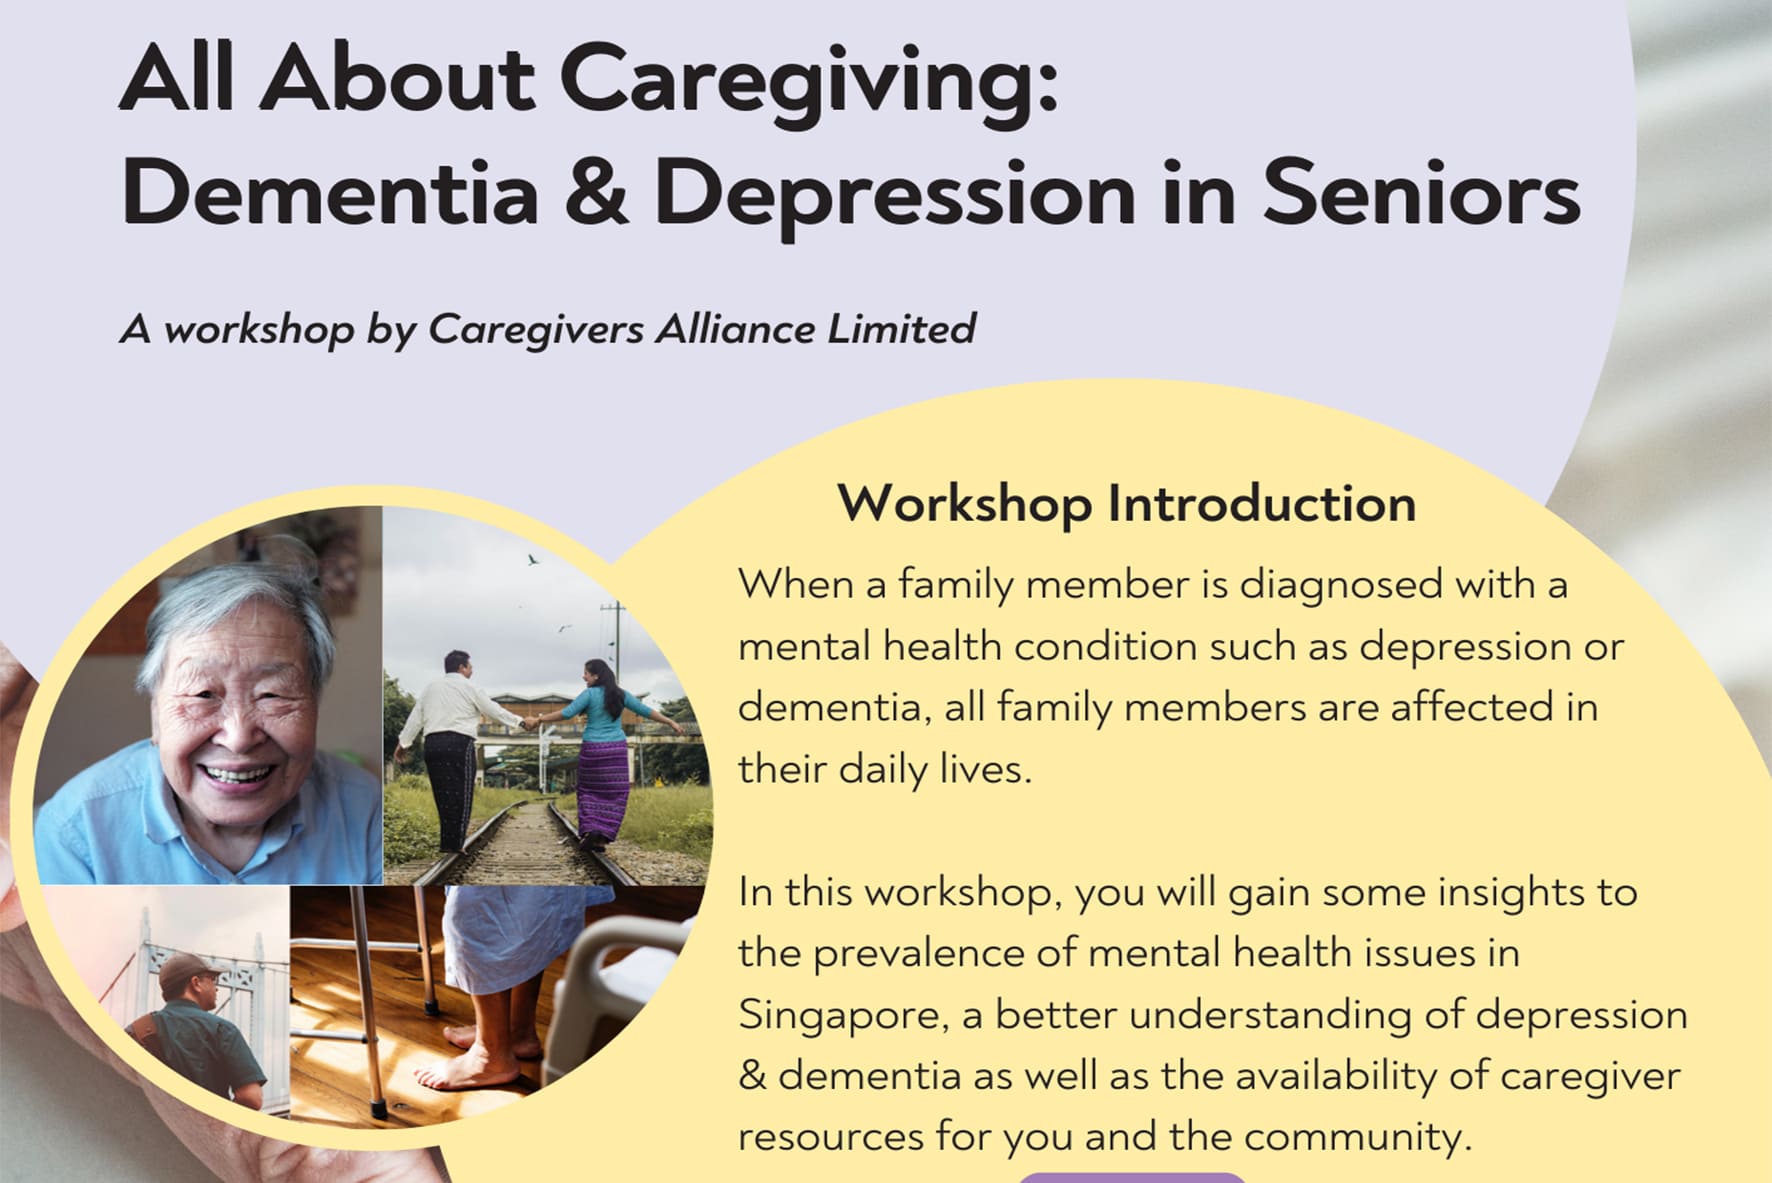 All About Caregiving: Dementia & Depression in Seniors